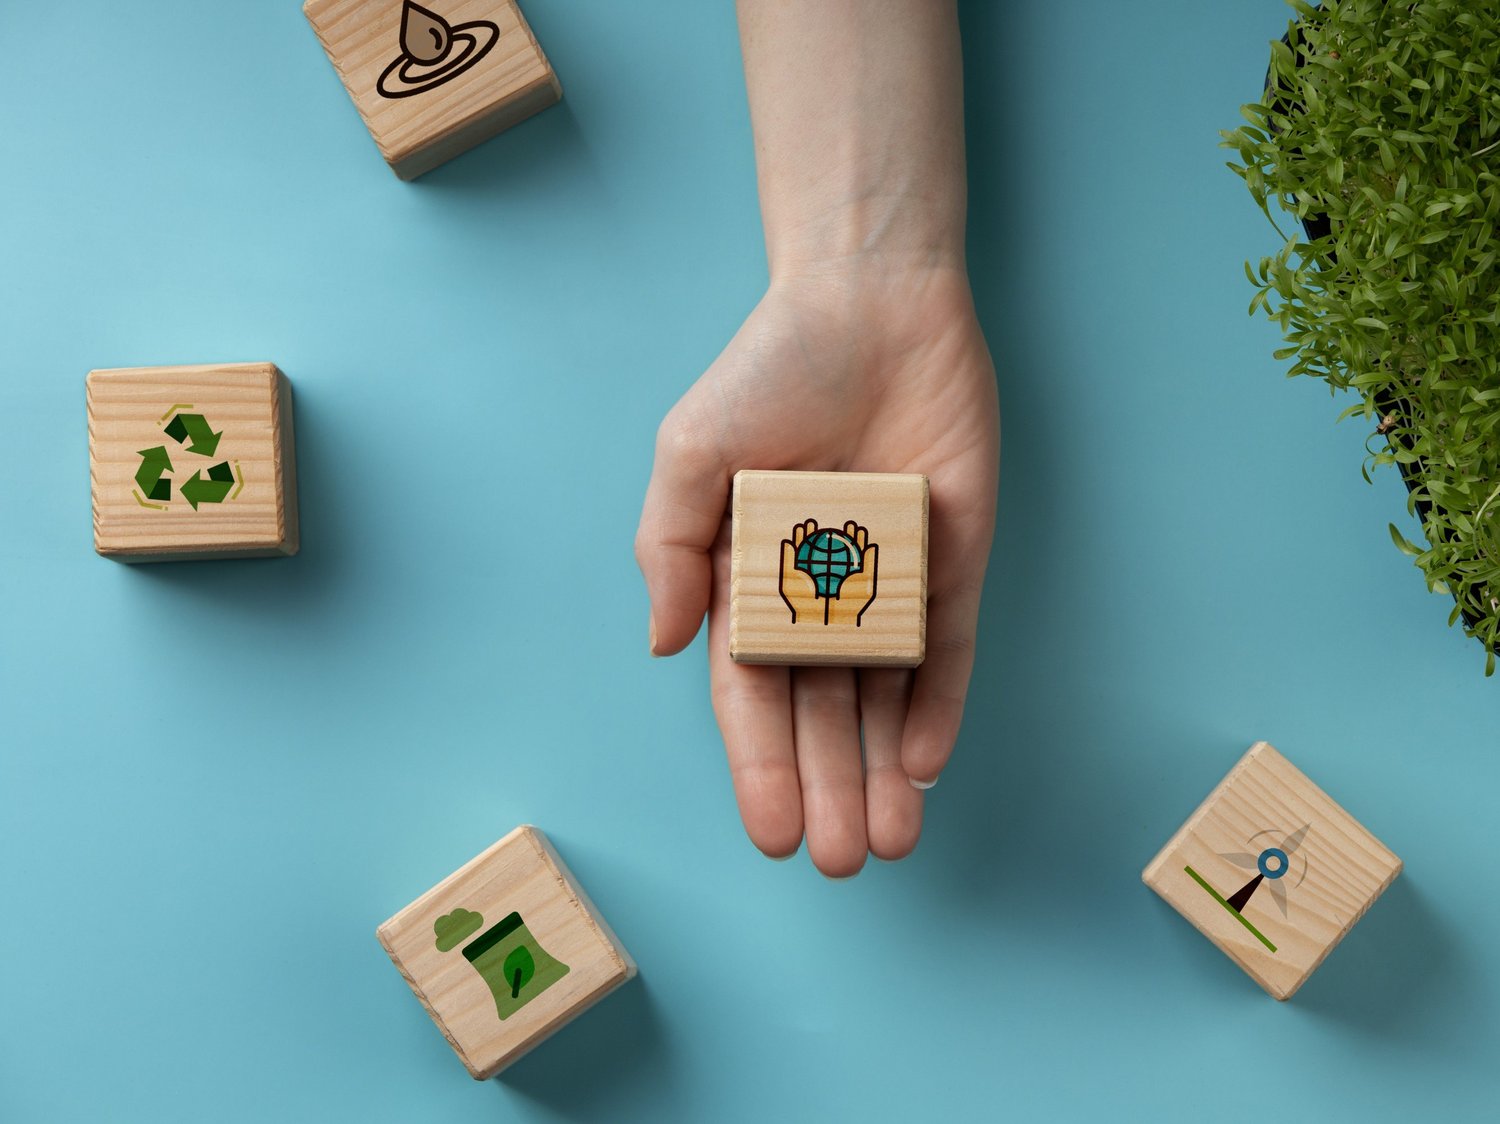 Holzquader mit Symbolen zum Thema Nachhaltigkeit